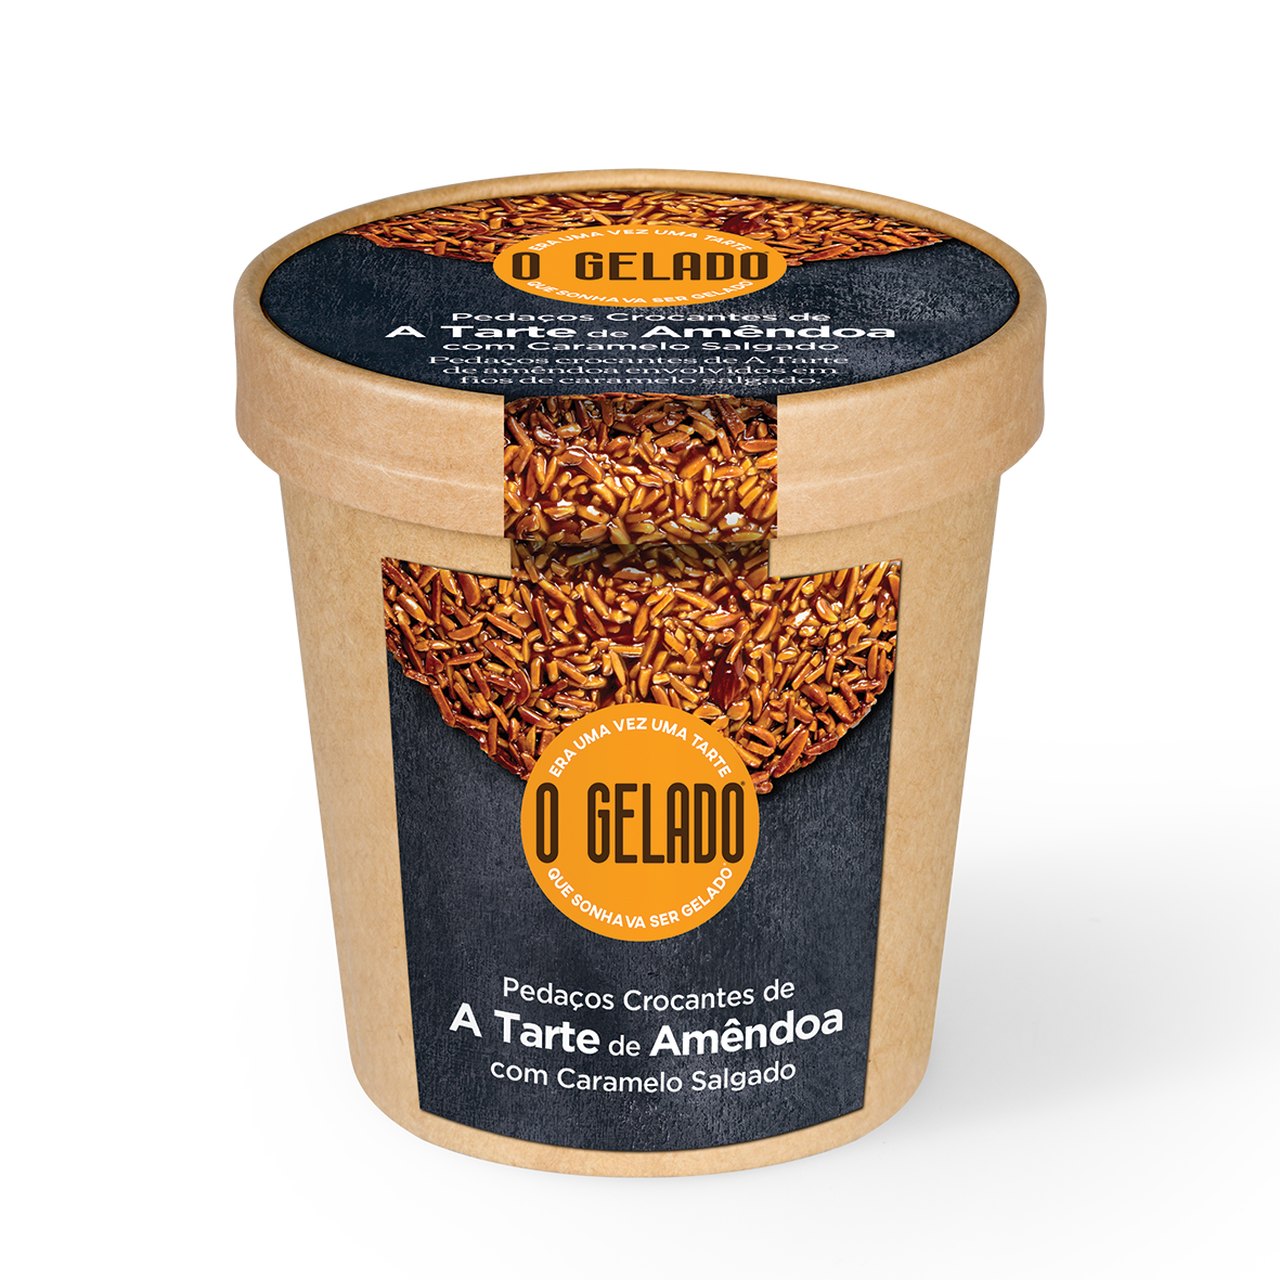 o-gelado-a-tarte-de-amendoa-460ml